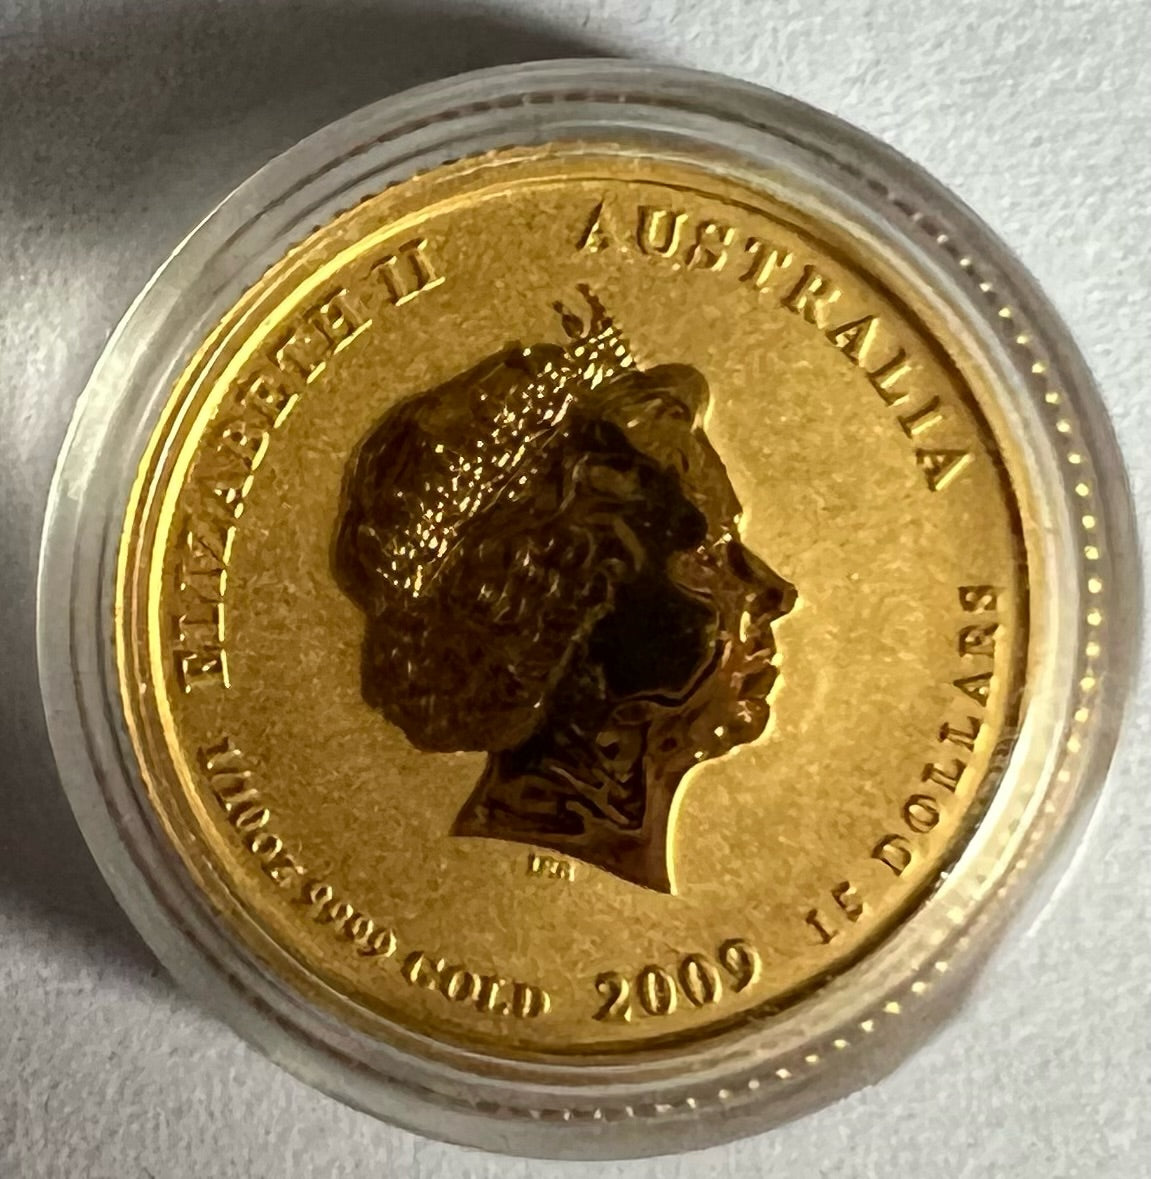 2009 Australia Lunar Ox 1/10 oz Gold Coin in Capsule